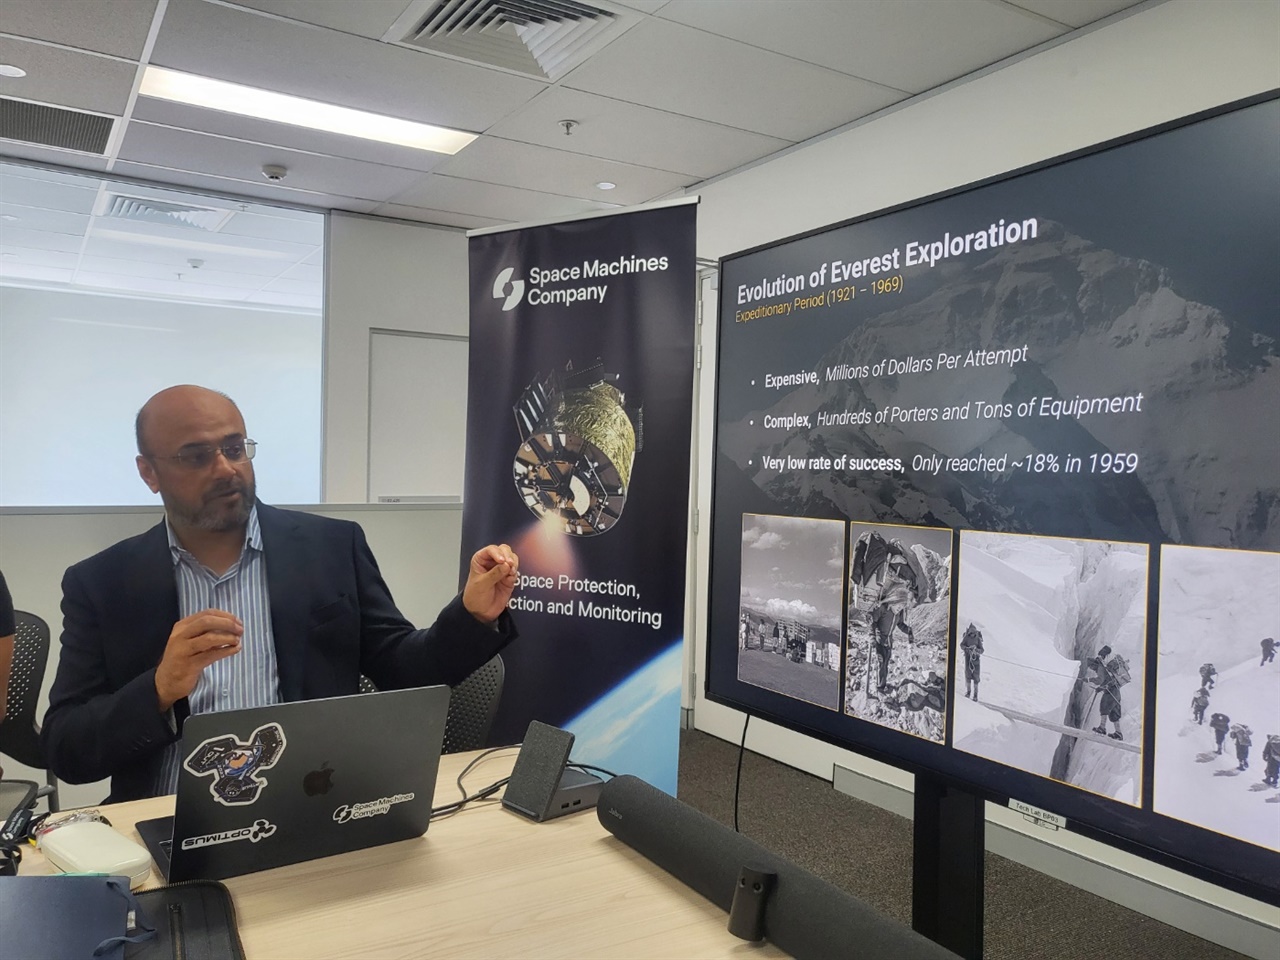 라자 쿨시레스타(Rajat Kulshrestha) 스페이스 머신 컴퍼니 최고경영자가 우주 서비스 등 회사가 추진하고 있는 프로젝트에 대해 설명하고 있다.